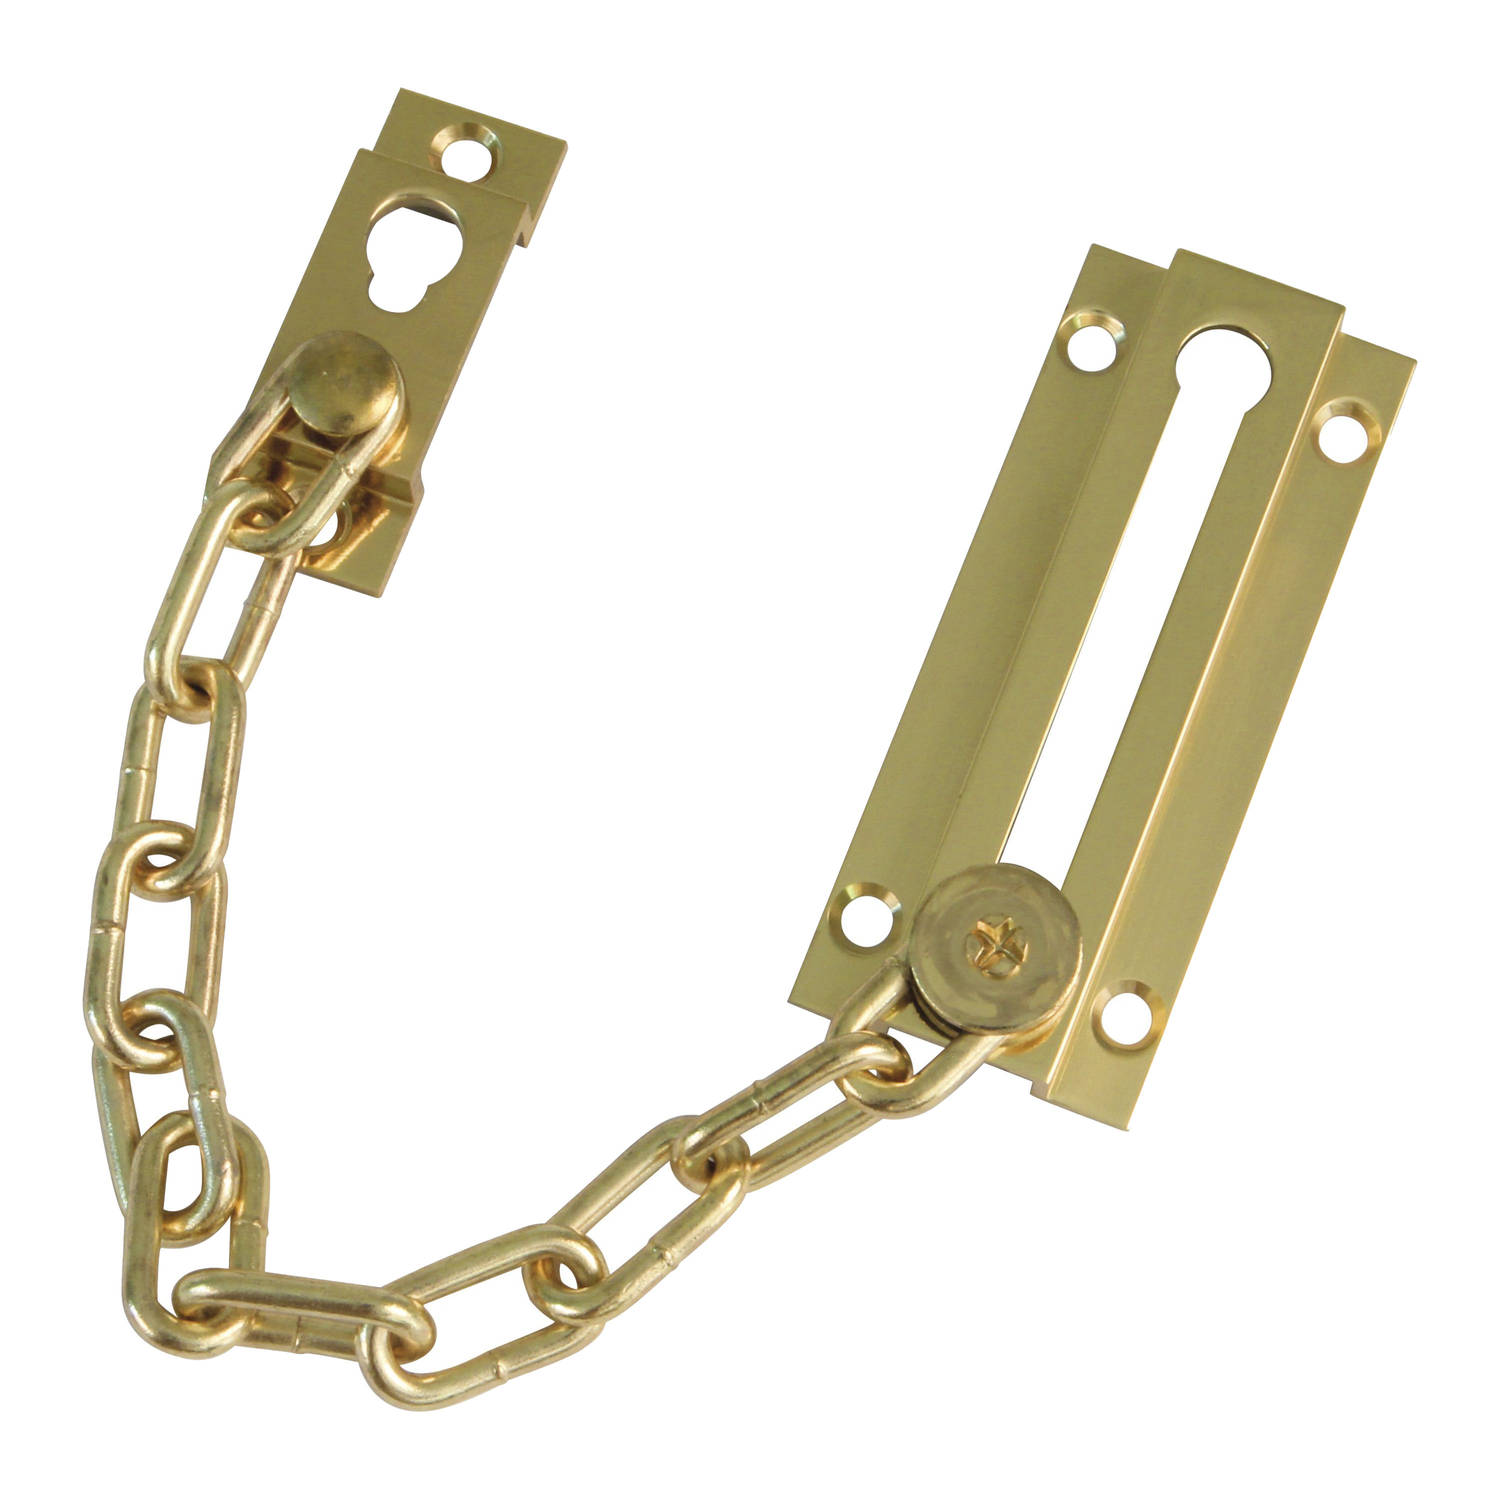 AMIG deurketting - messing - goud - 18 cm - incl schroeven - inbraakbeveiliging